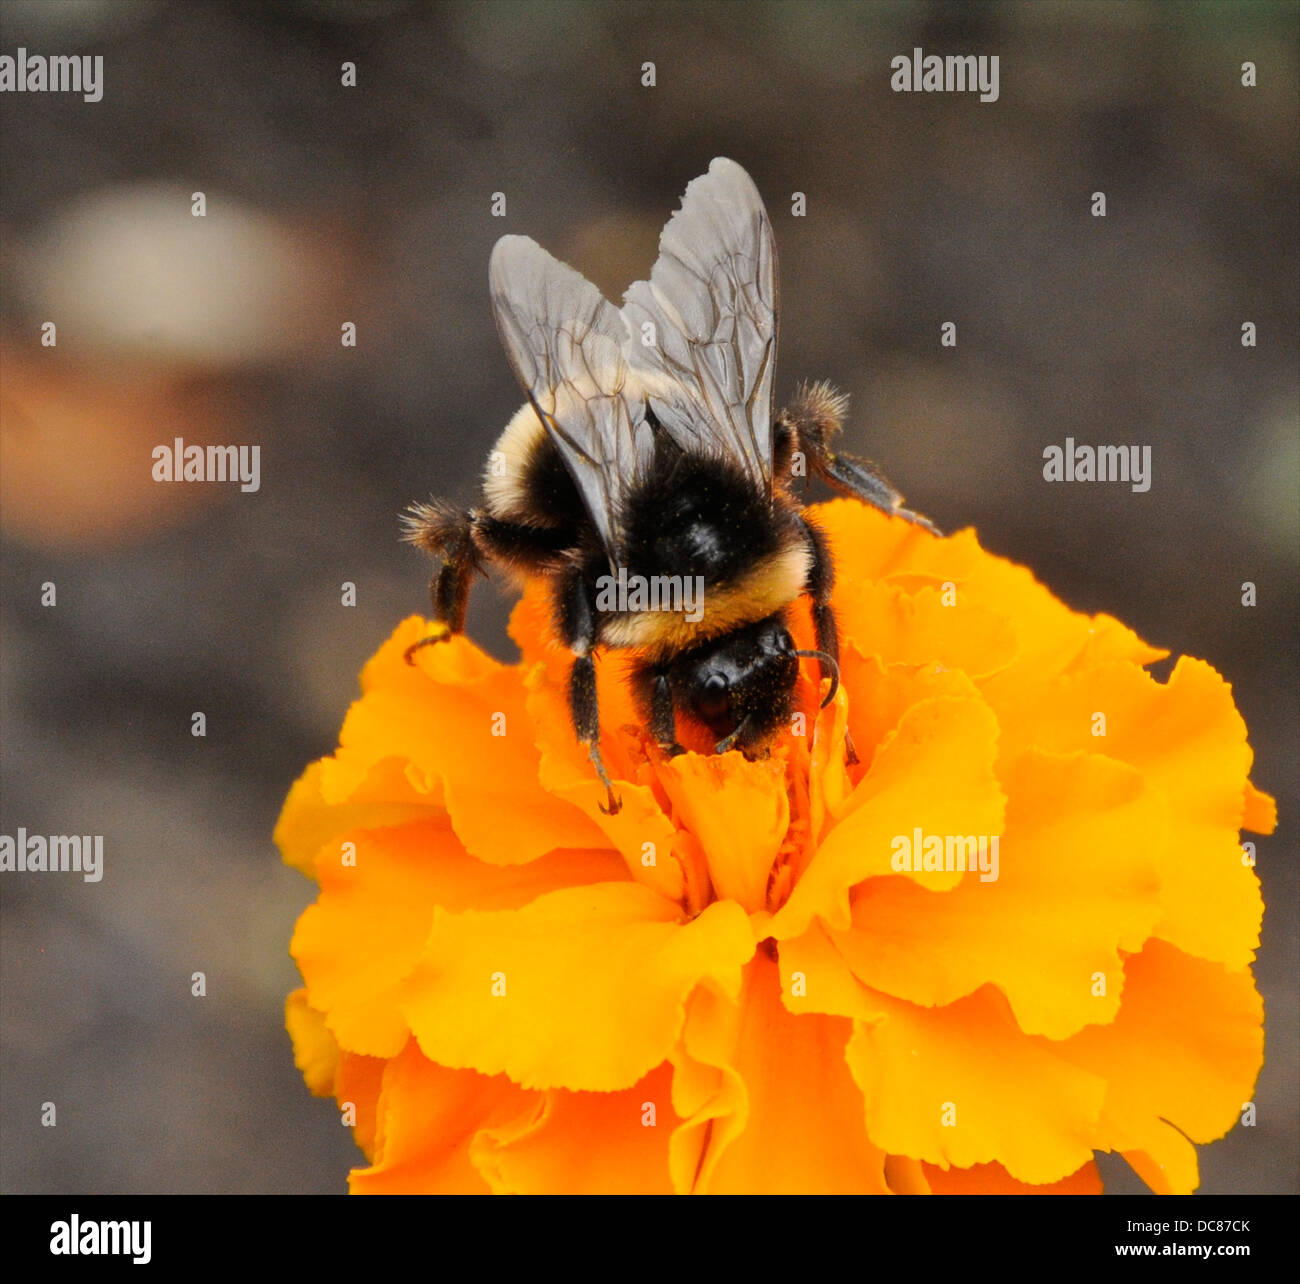 Hummel auf eine Blume-Ringelblume Stockfoto